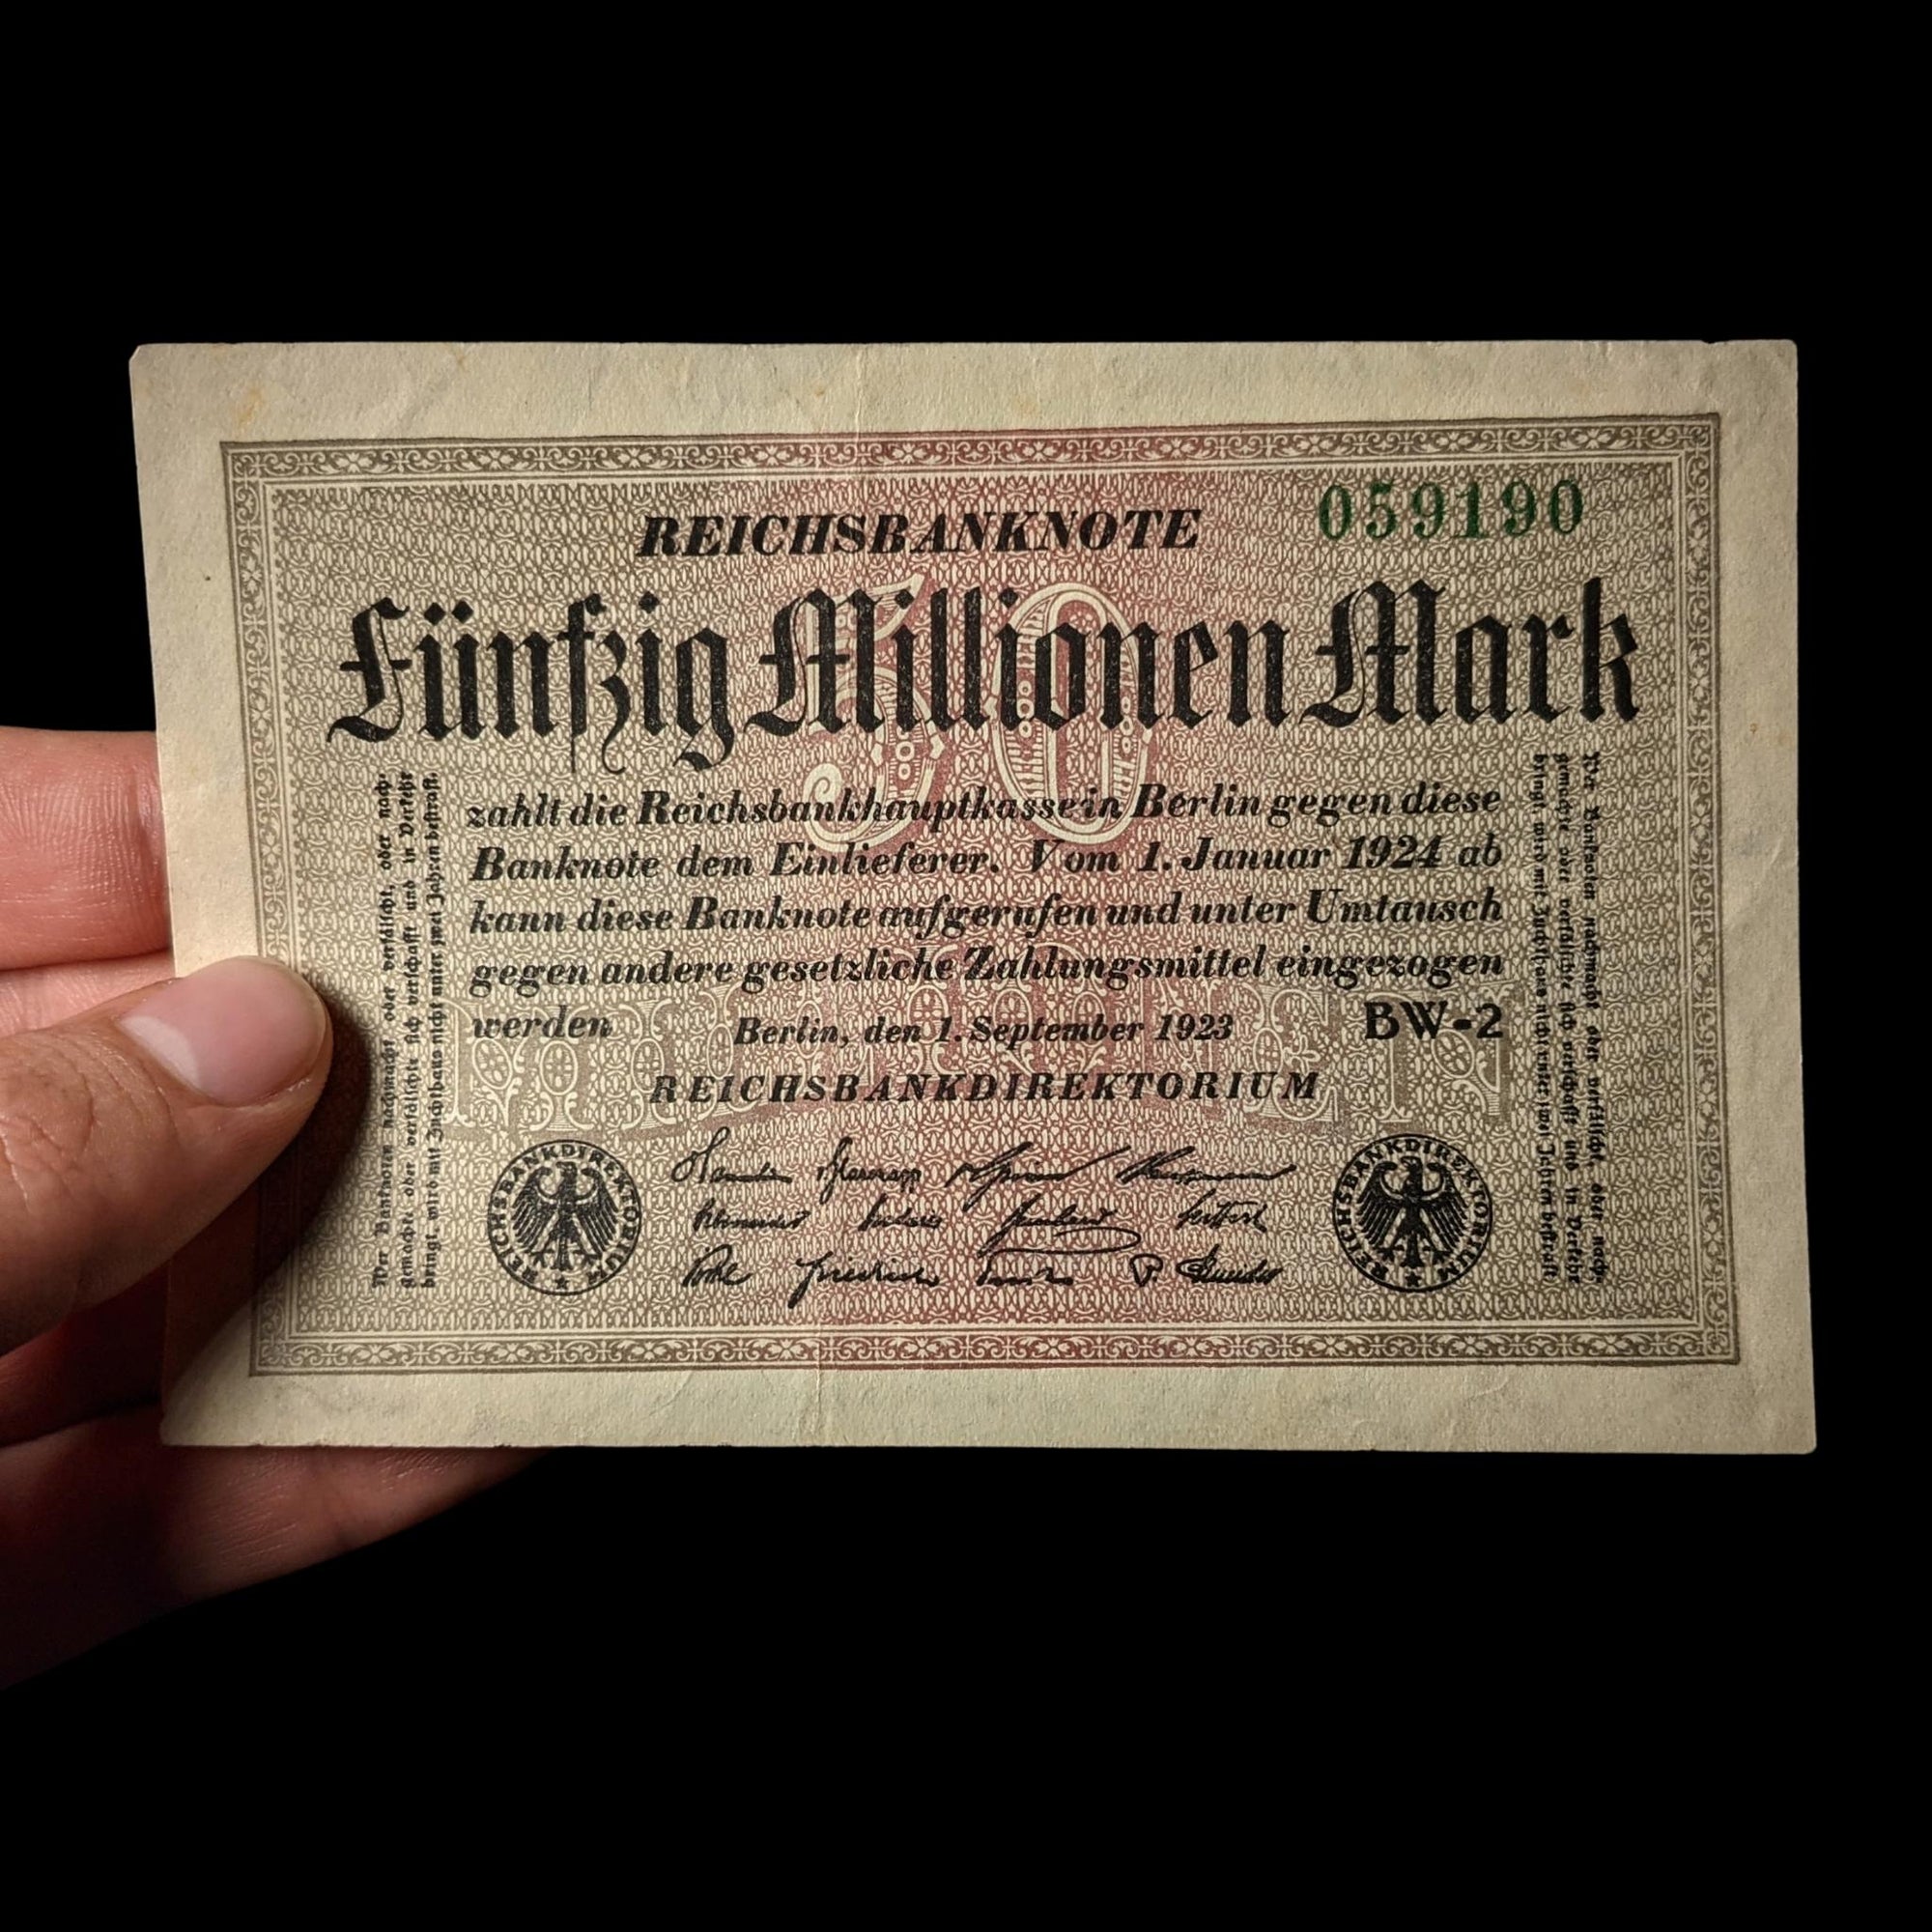 German Inflation Bill, 50,000,000 Marks - 1923 - Weimar Republic